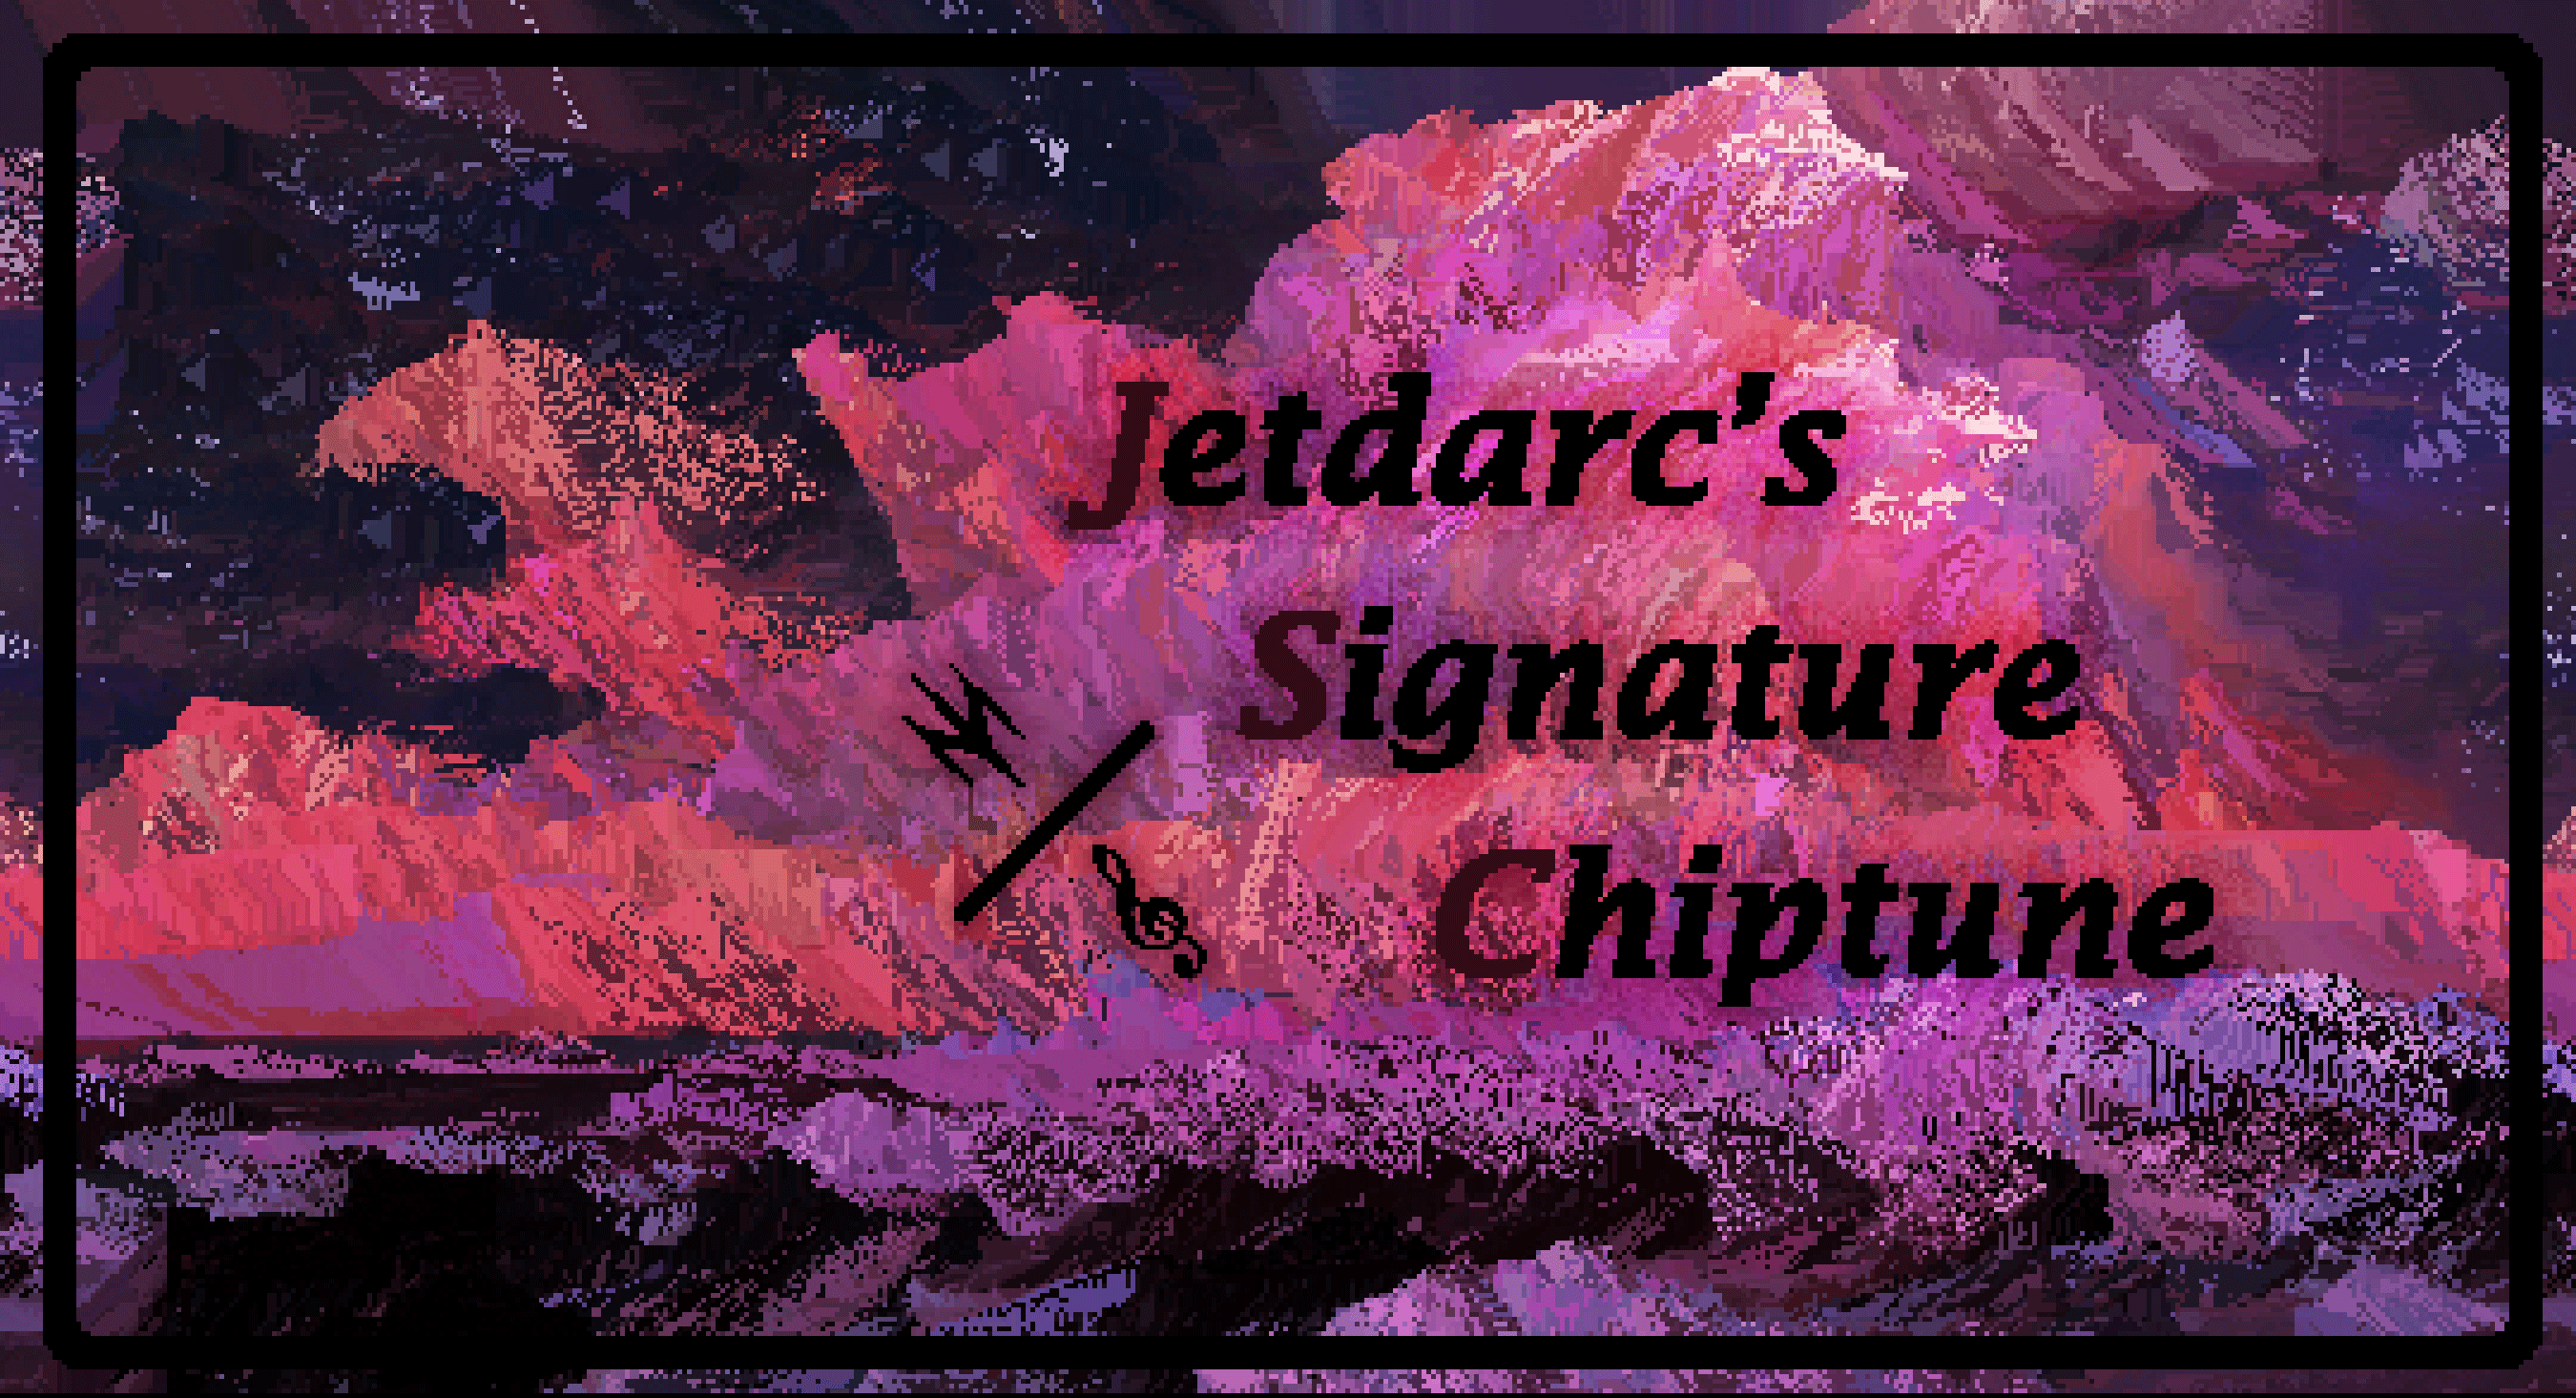 Jetdarc's Signature Chiptune